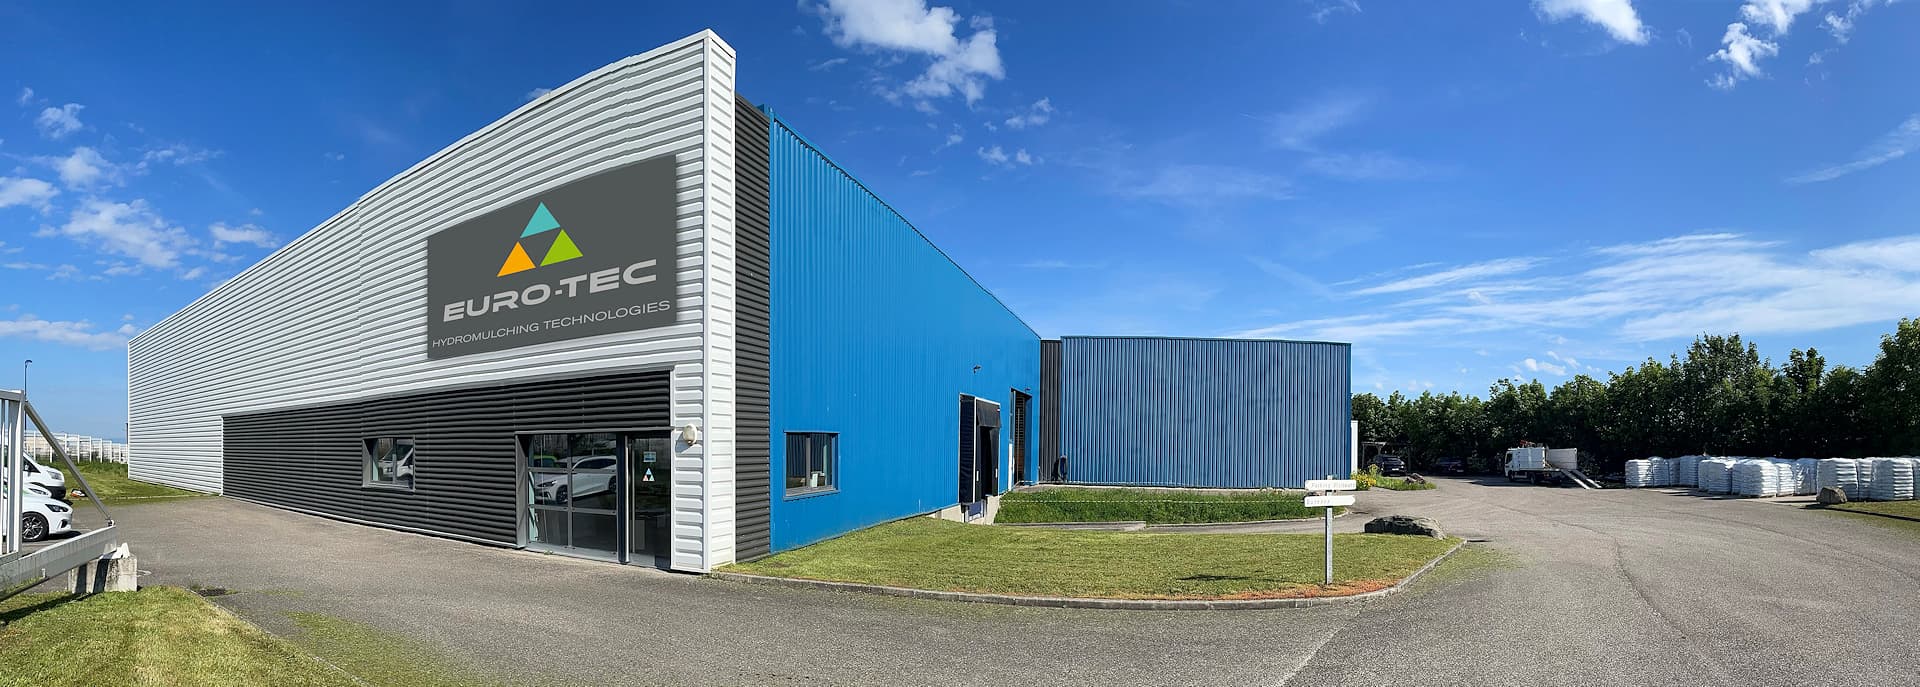 Euro-Tec est une entreprise Lyonnaise dont le siège est situé à proximité immédiate de l’Aéroport International de Lyon Saint Exupéry et de la gare TGV.